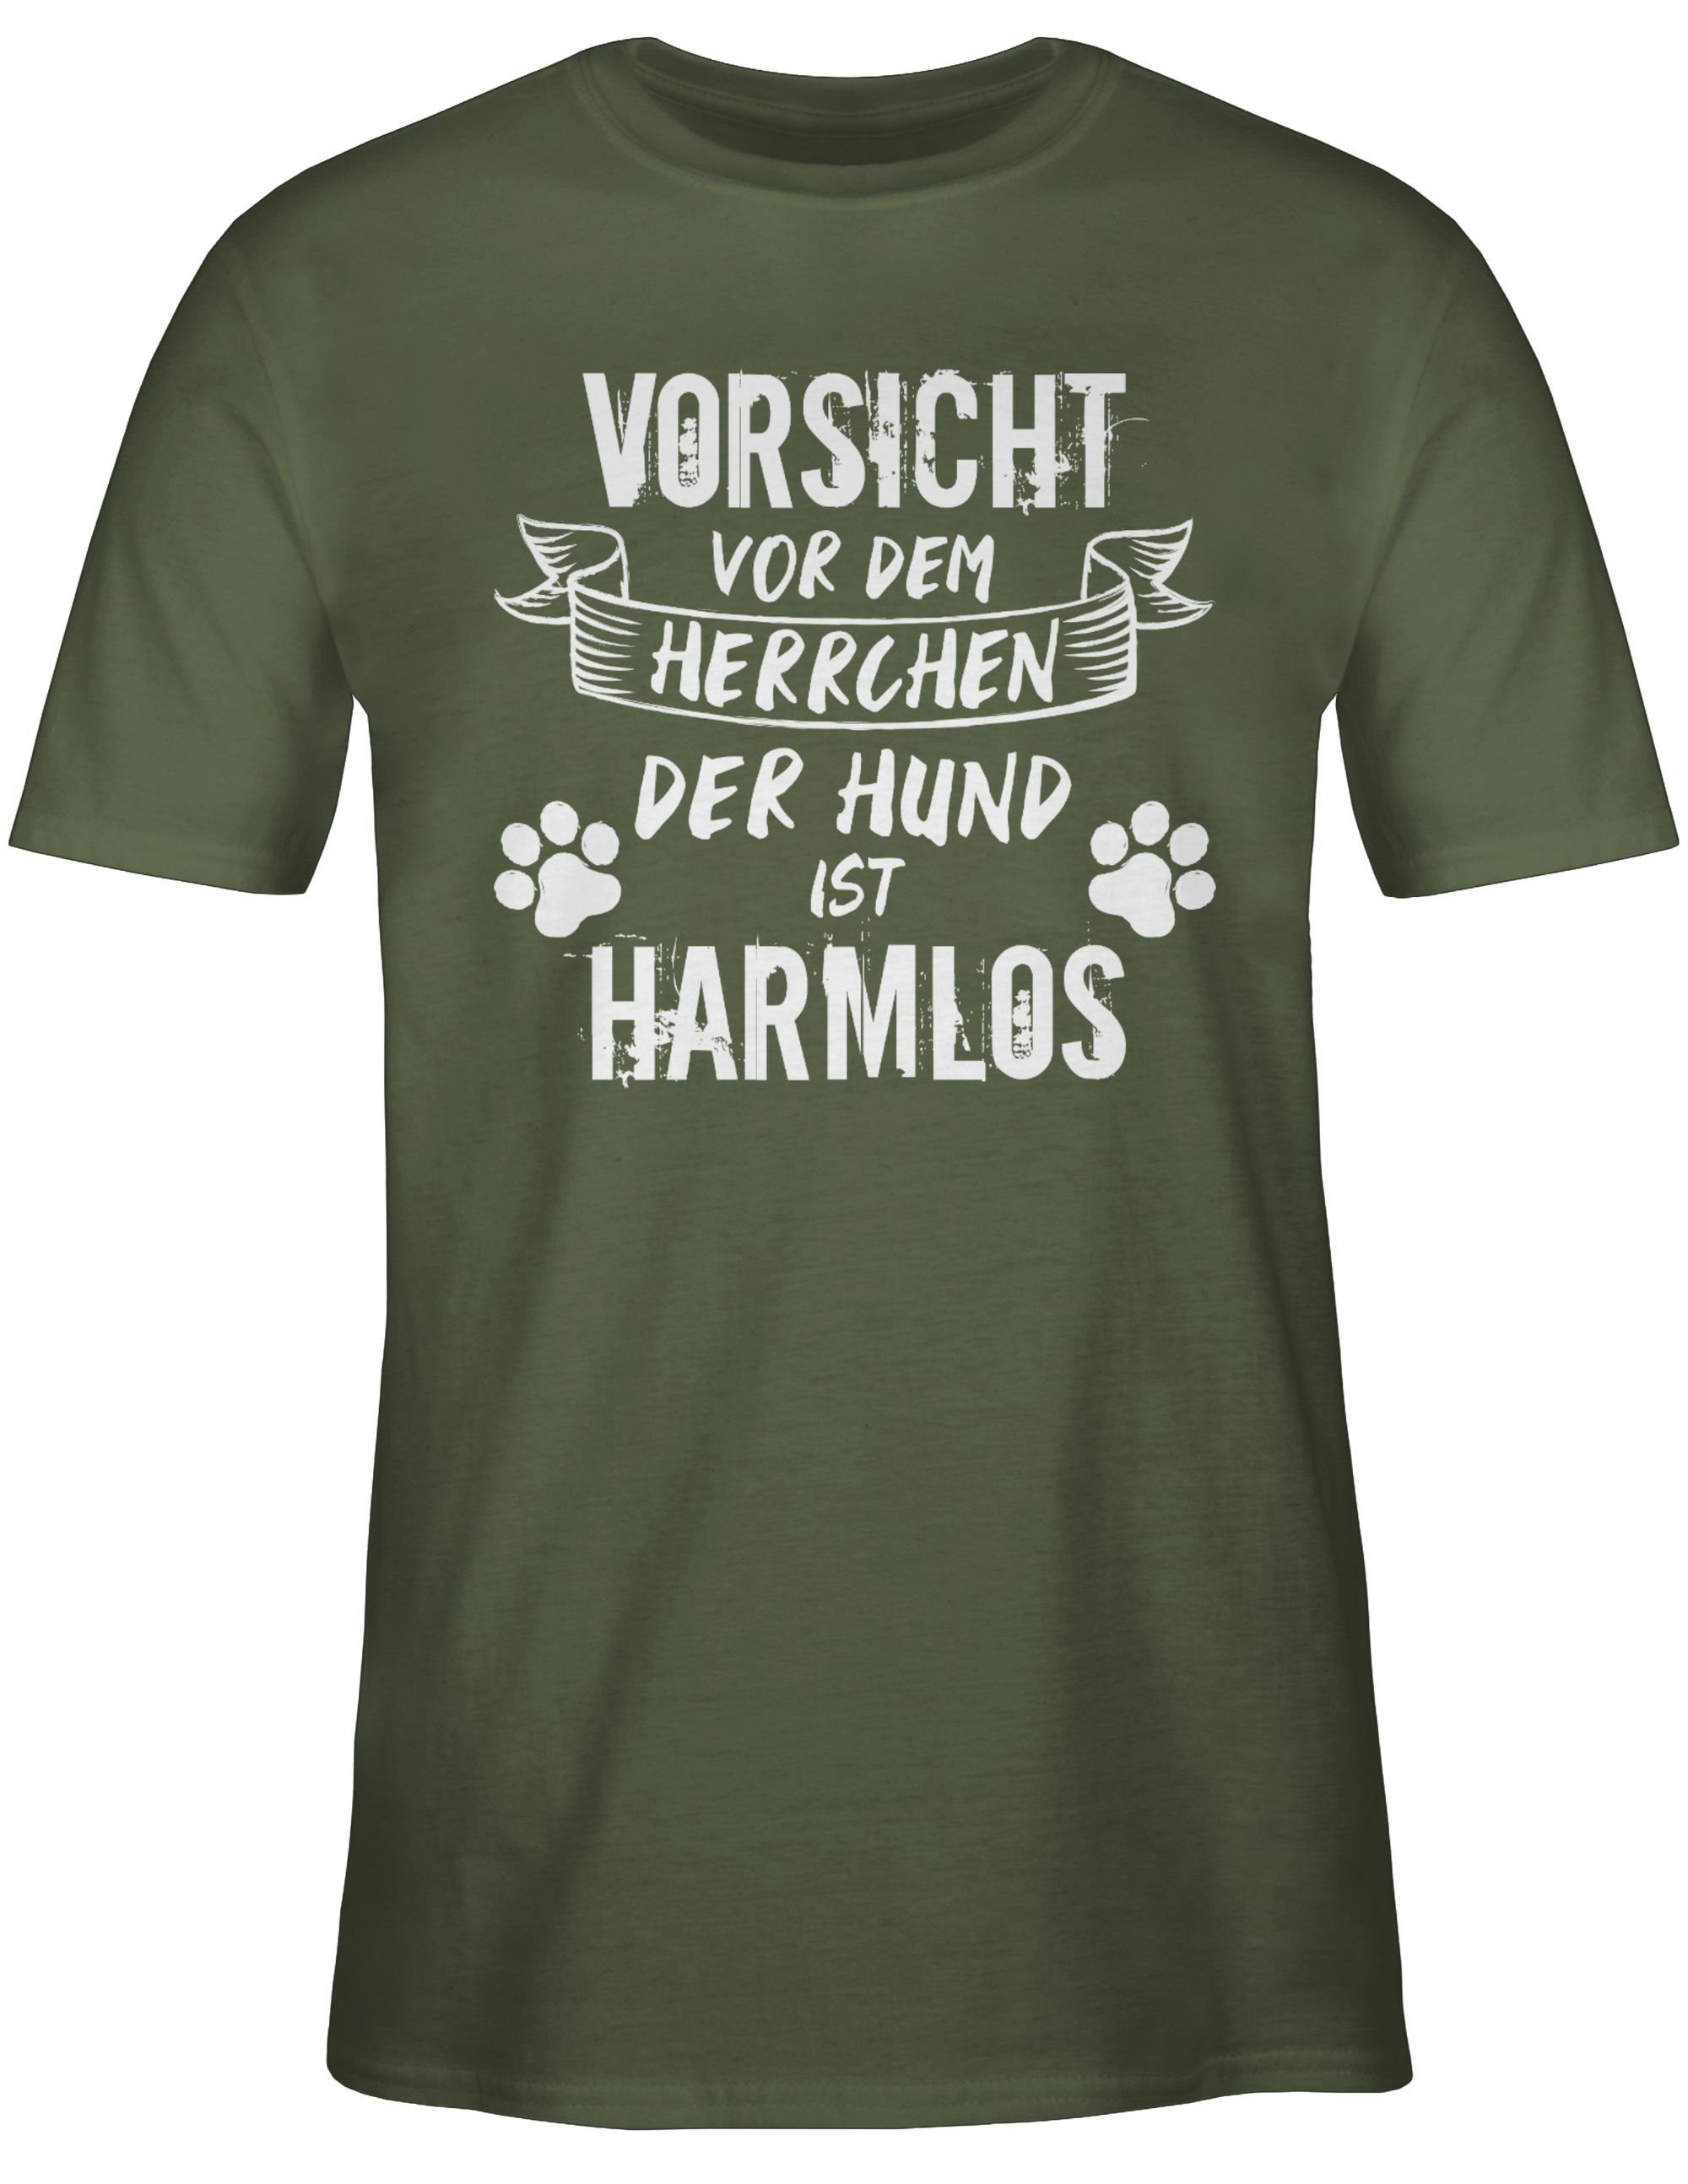 Herrchen Hundebesitzer Army - 03 Geschenk der Shirtracer vor T-Shirt für - Hund Grün Grunge/Vintage ist dem Vorsicht Weiß harmlos